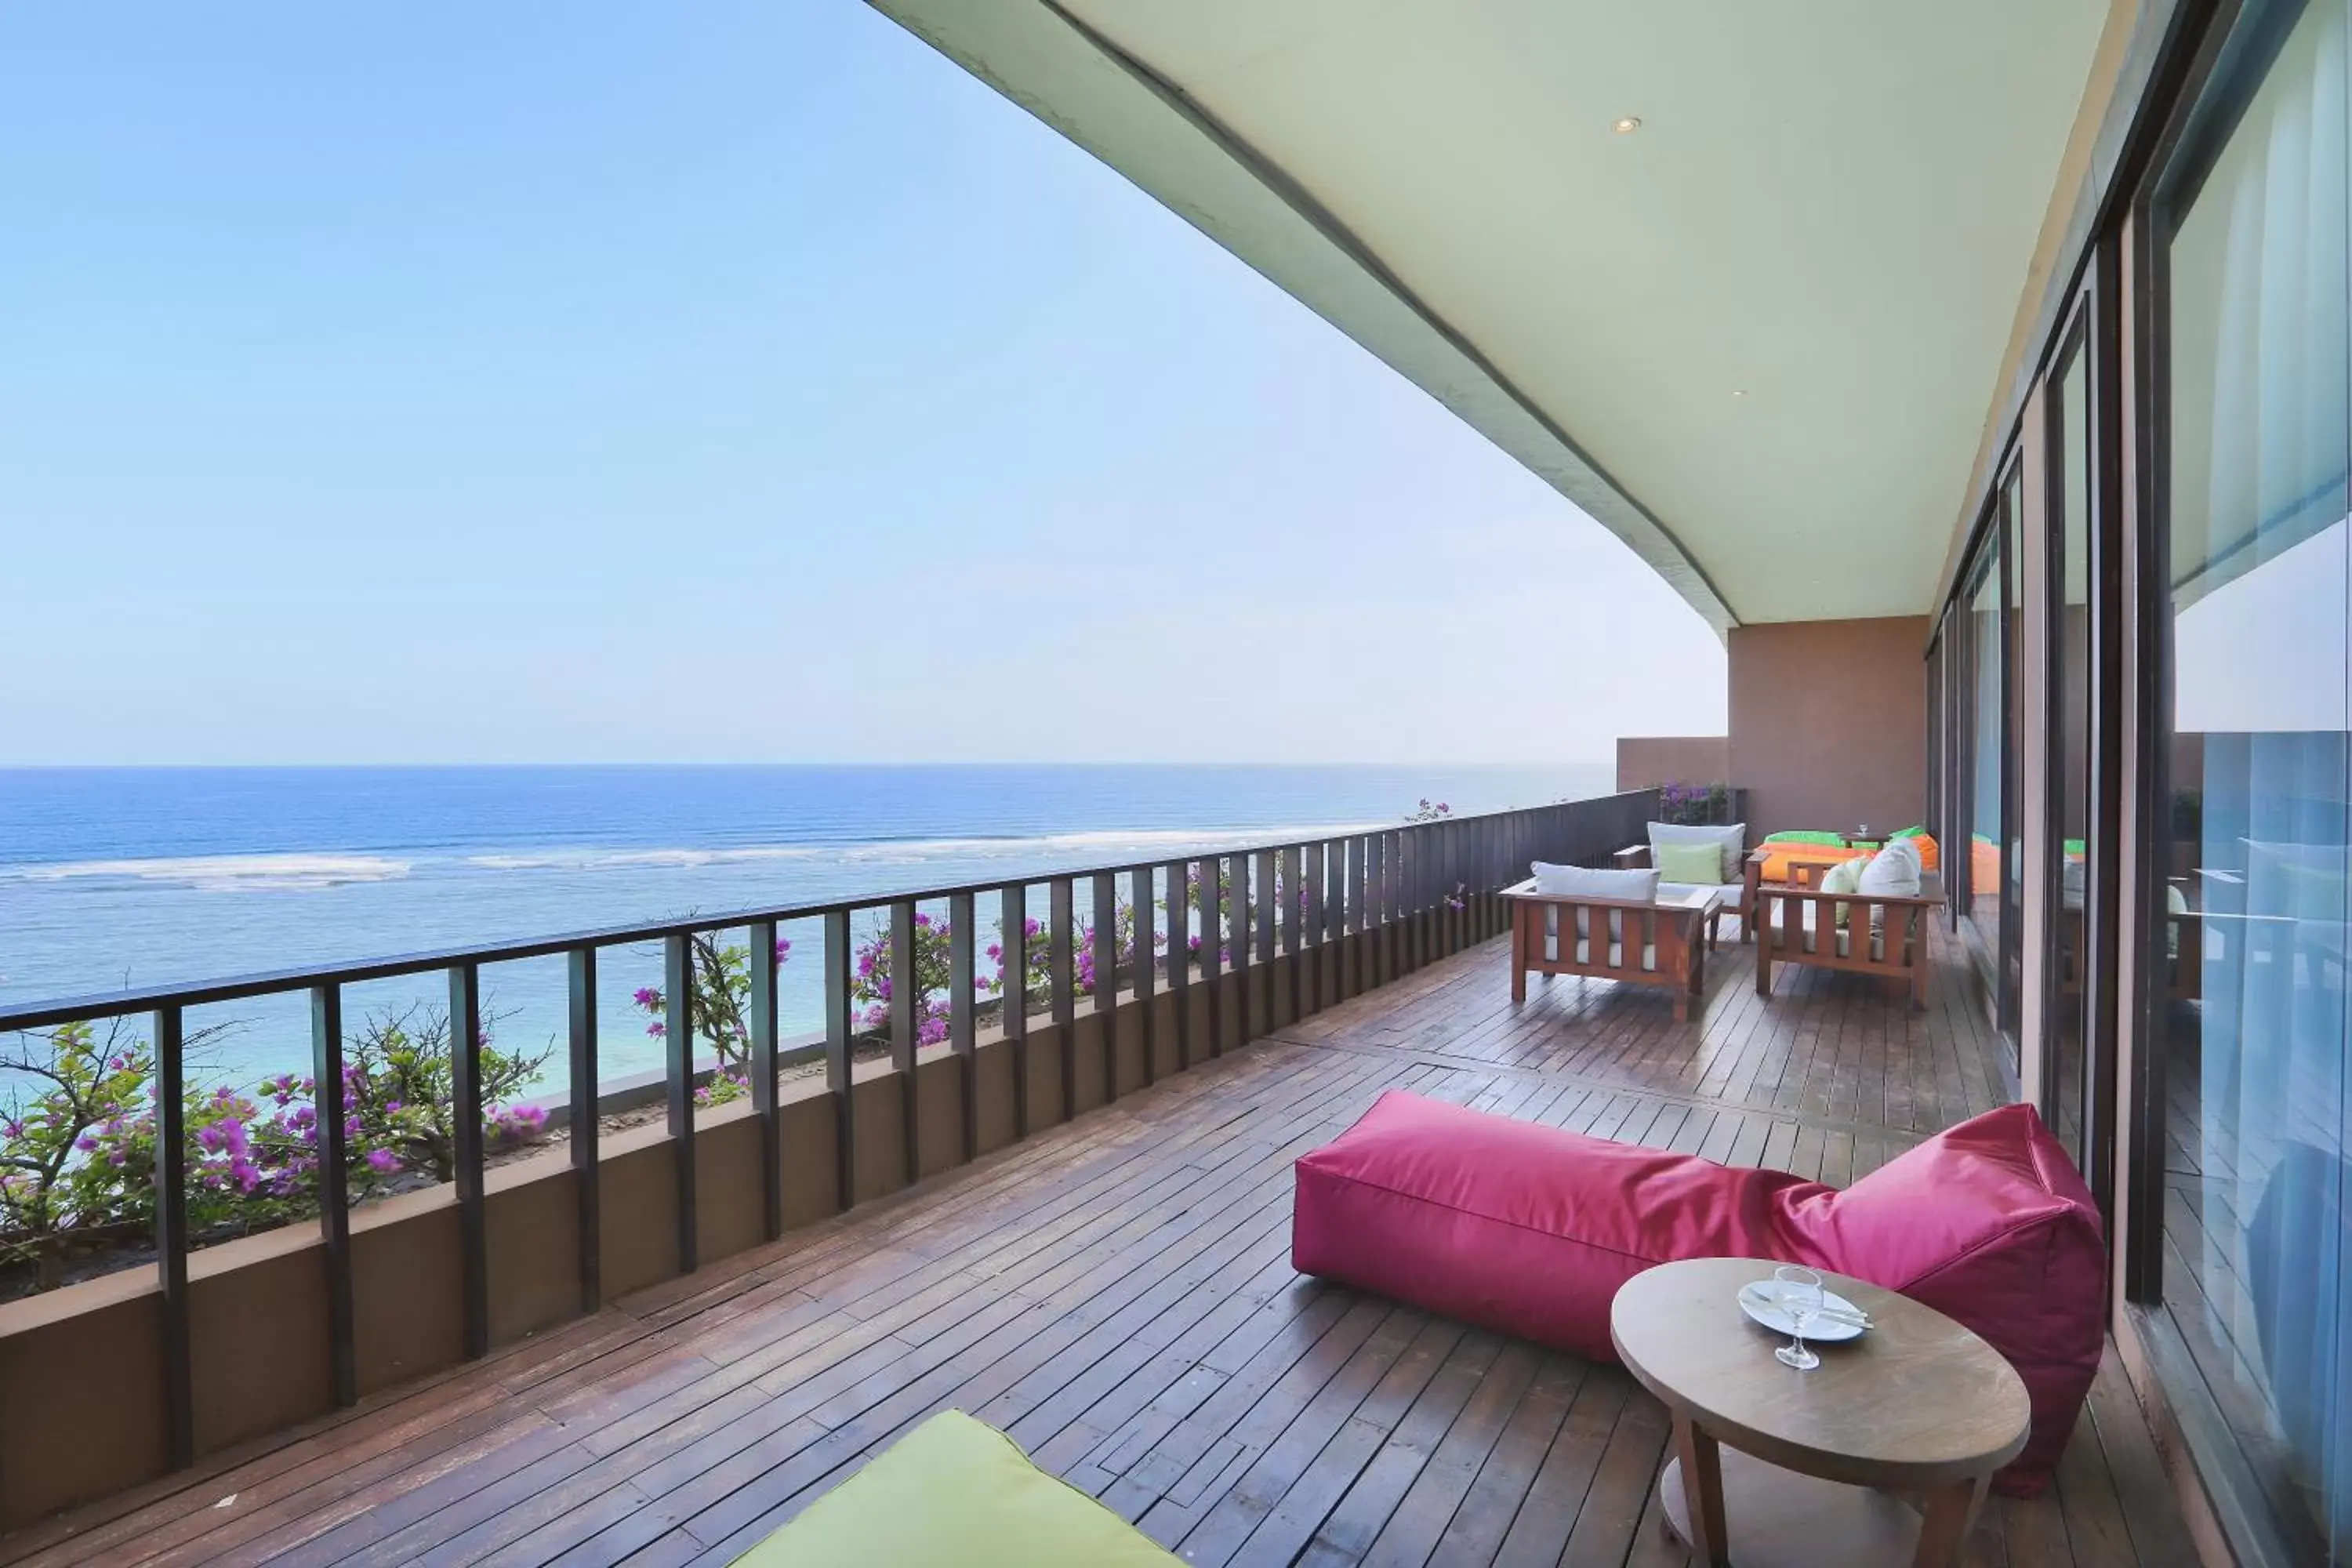 Sea view in Ulu Segara Luxury Suites & Villas